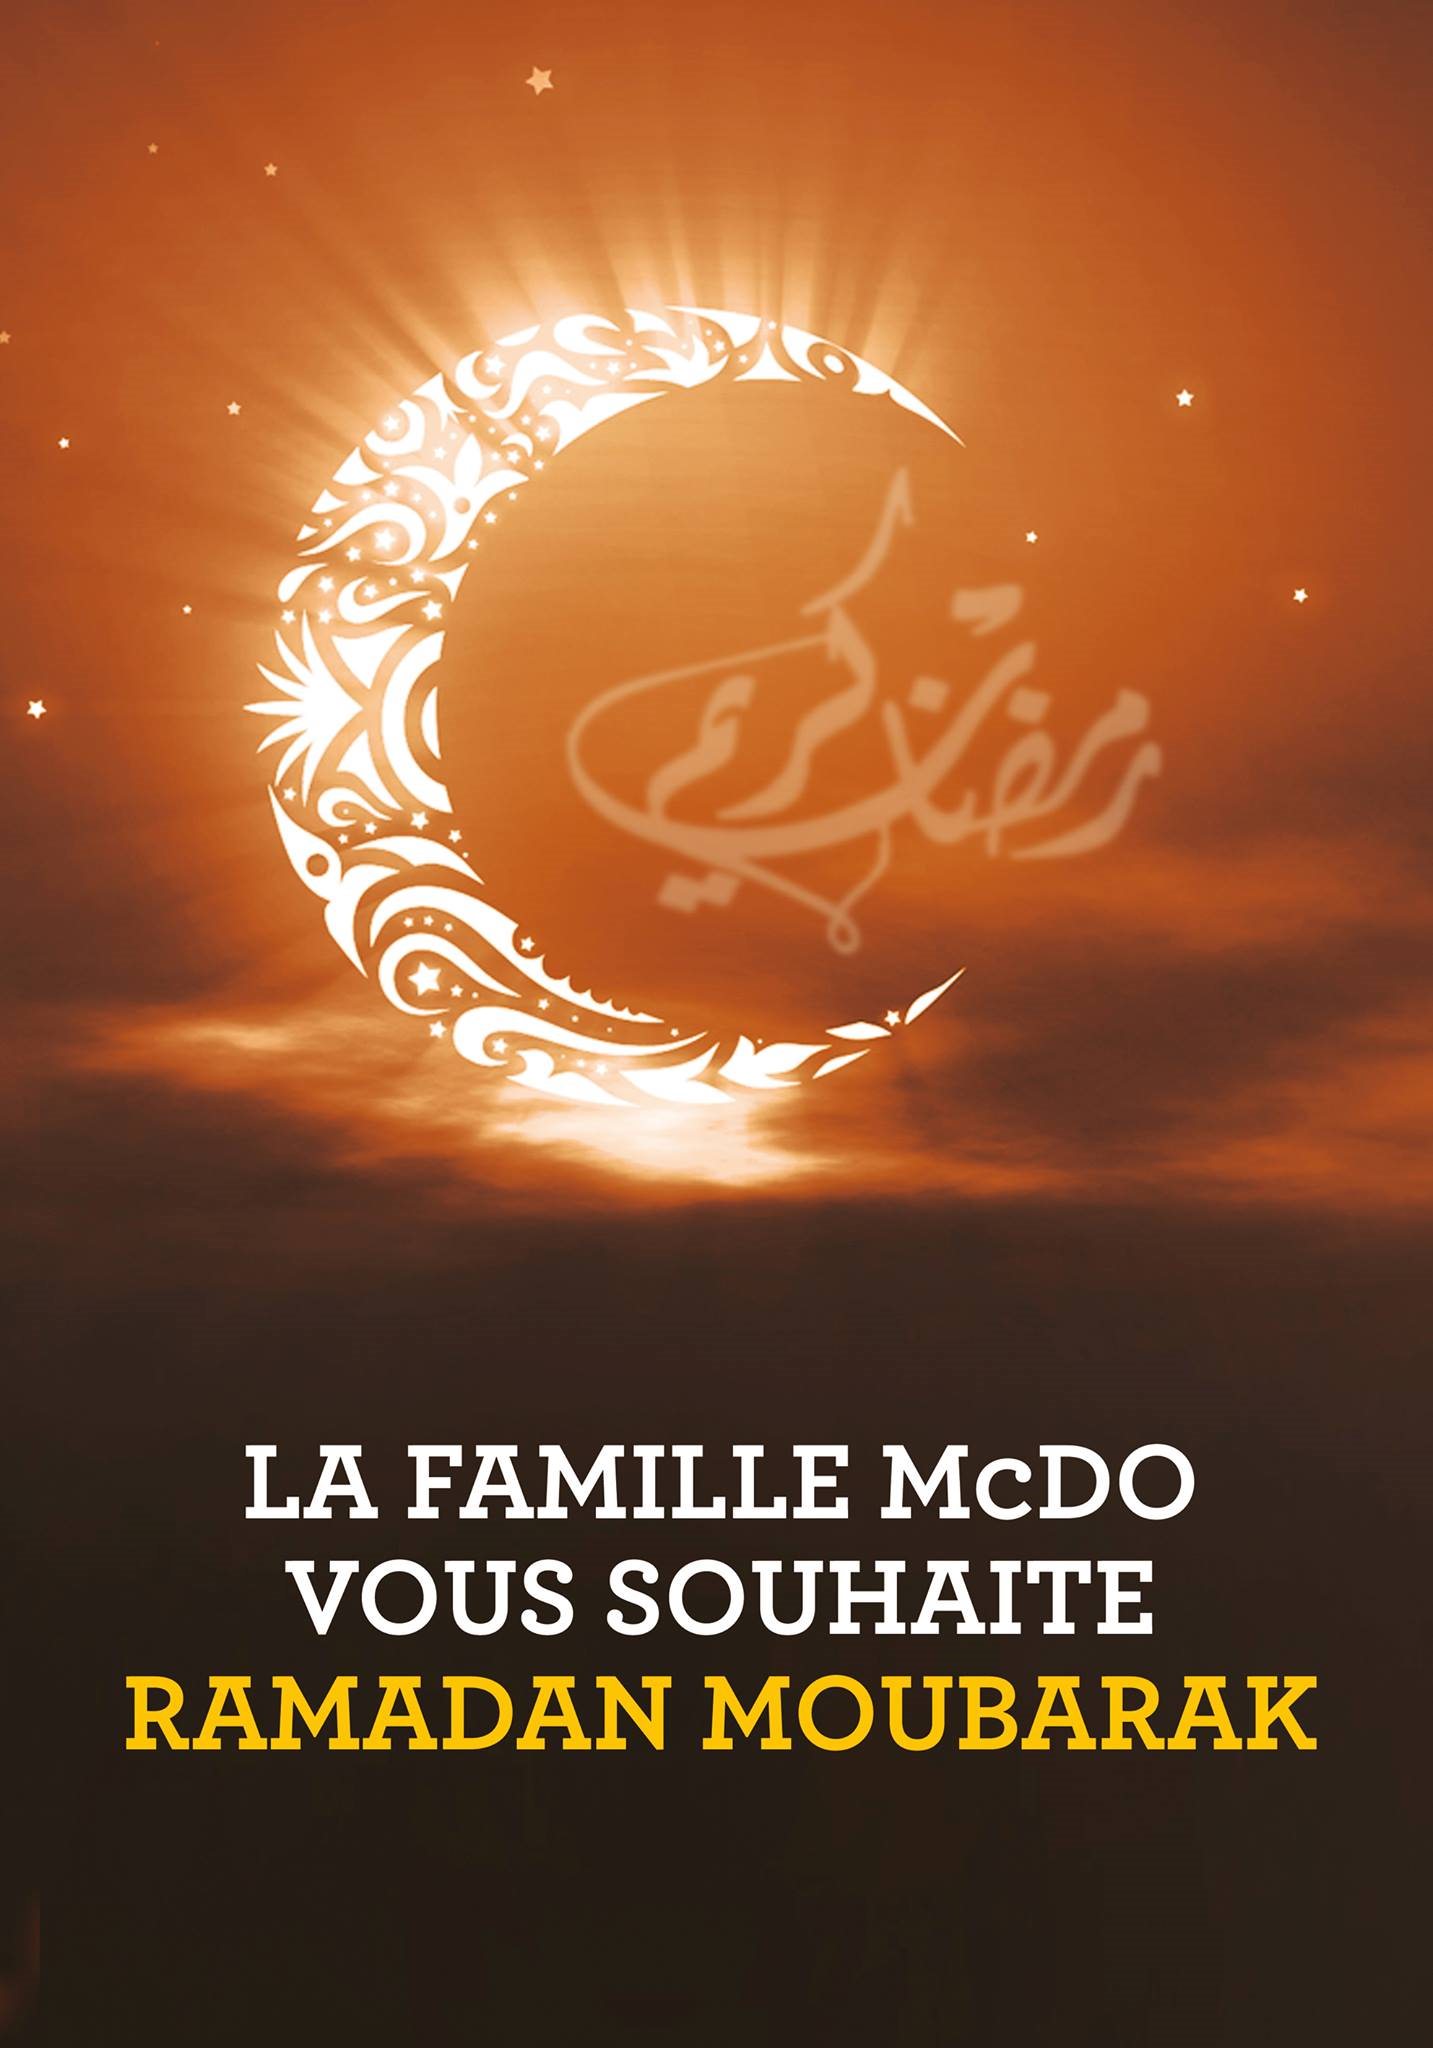 Поздравляю с окончанием месяца рамадан